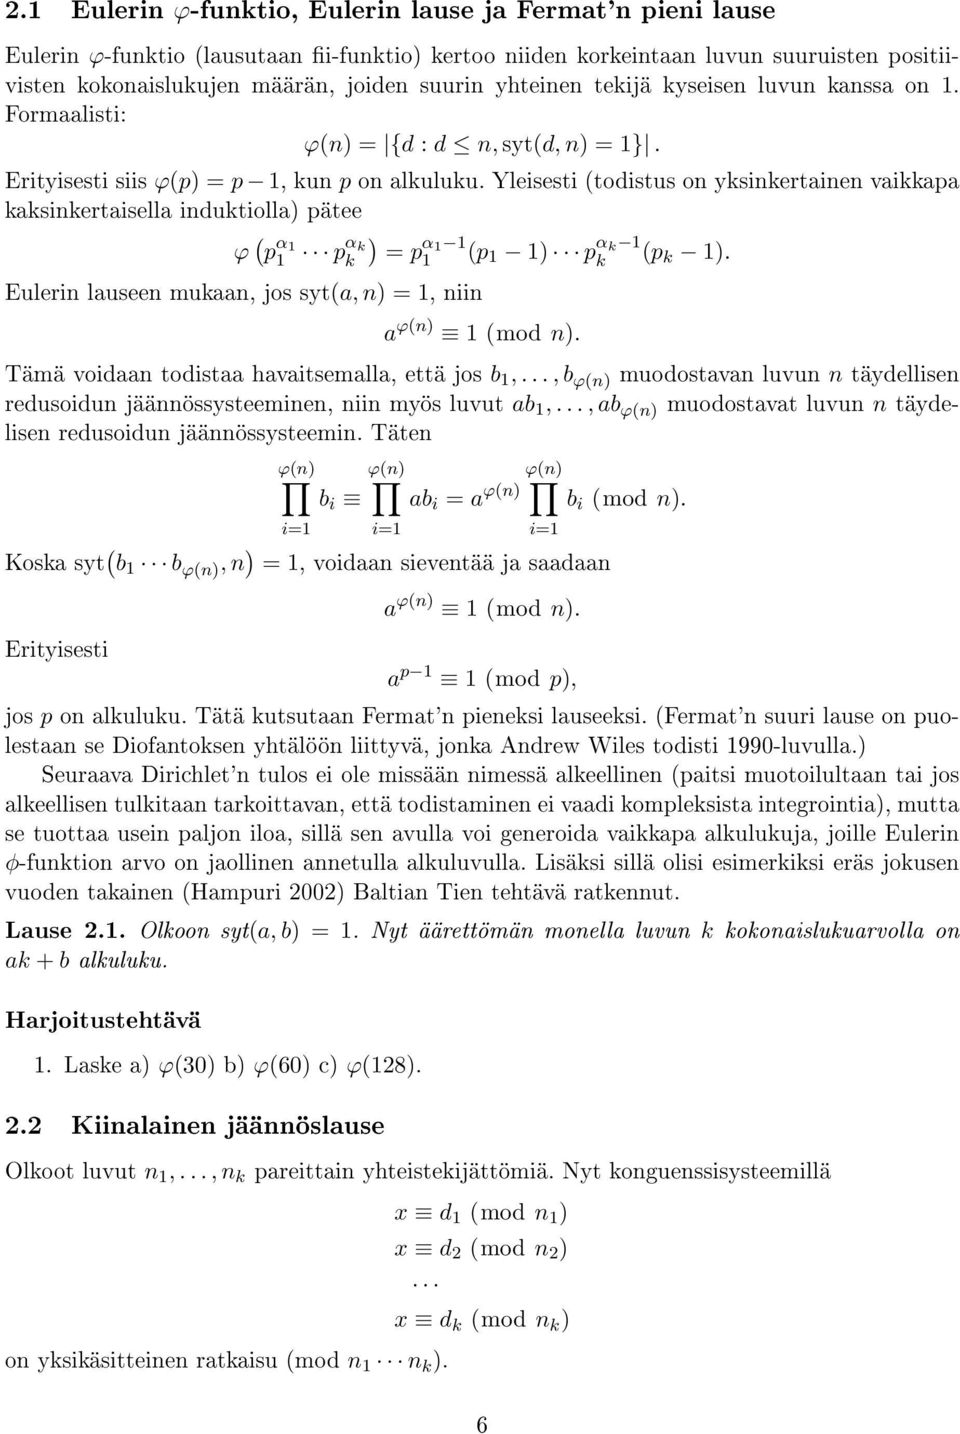 Yleisesti (todistus on yksinkertainen vaikkapa kaksinkertaisella induktiolla) pätee ϕ ( p α 1 1 ) pα k k = p α 1 1 1 (p 1 1) p α k 1 k (p k 1).